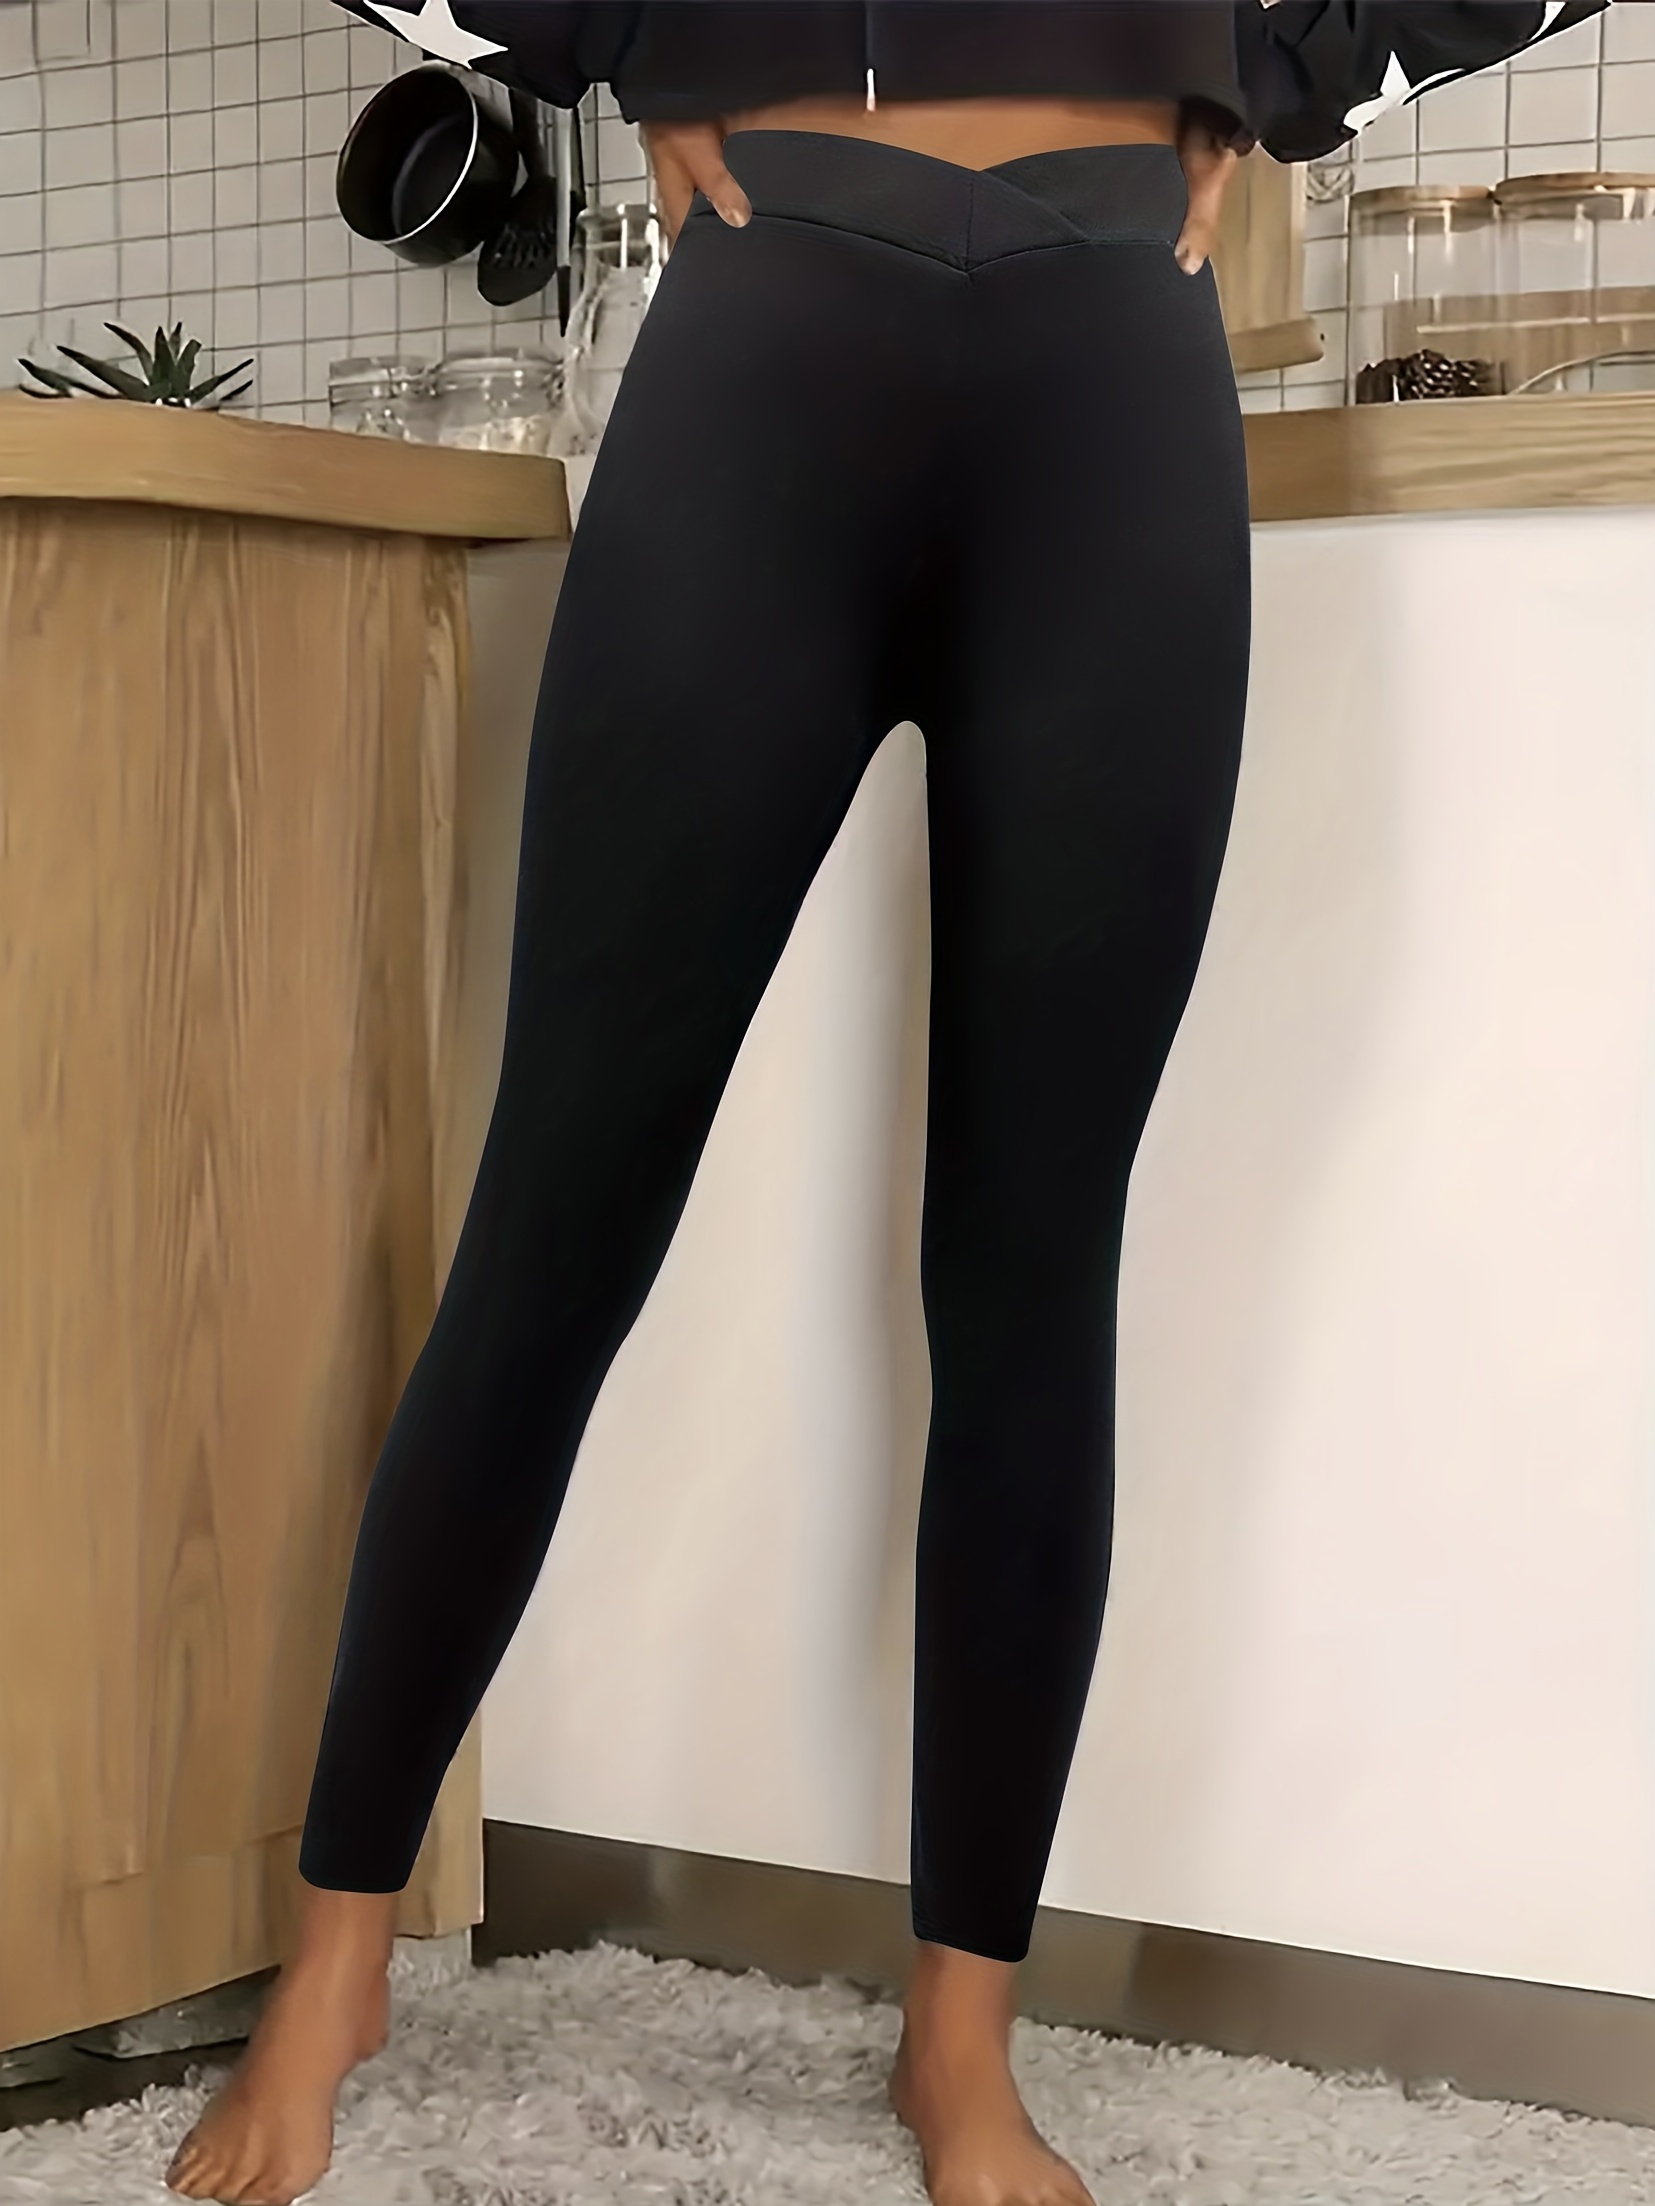 Luluemon cropped leggings - size 8 Great - Depop